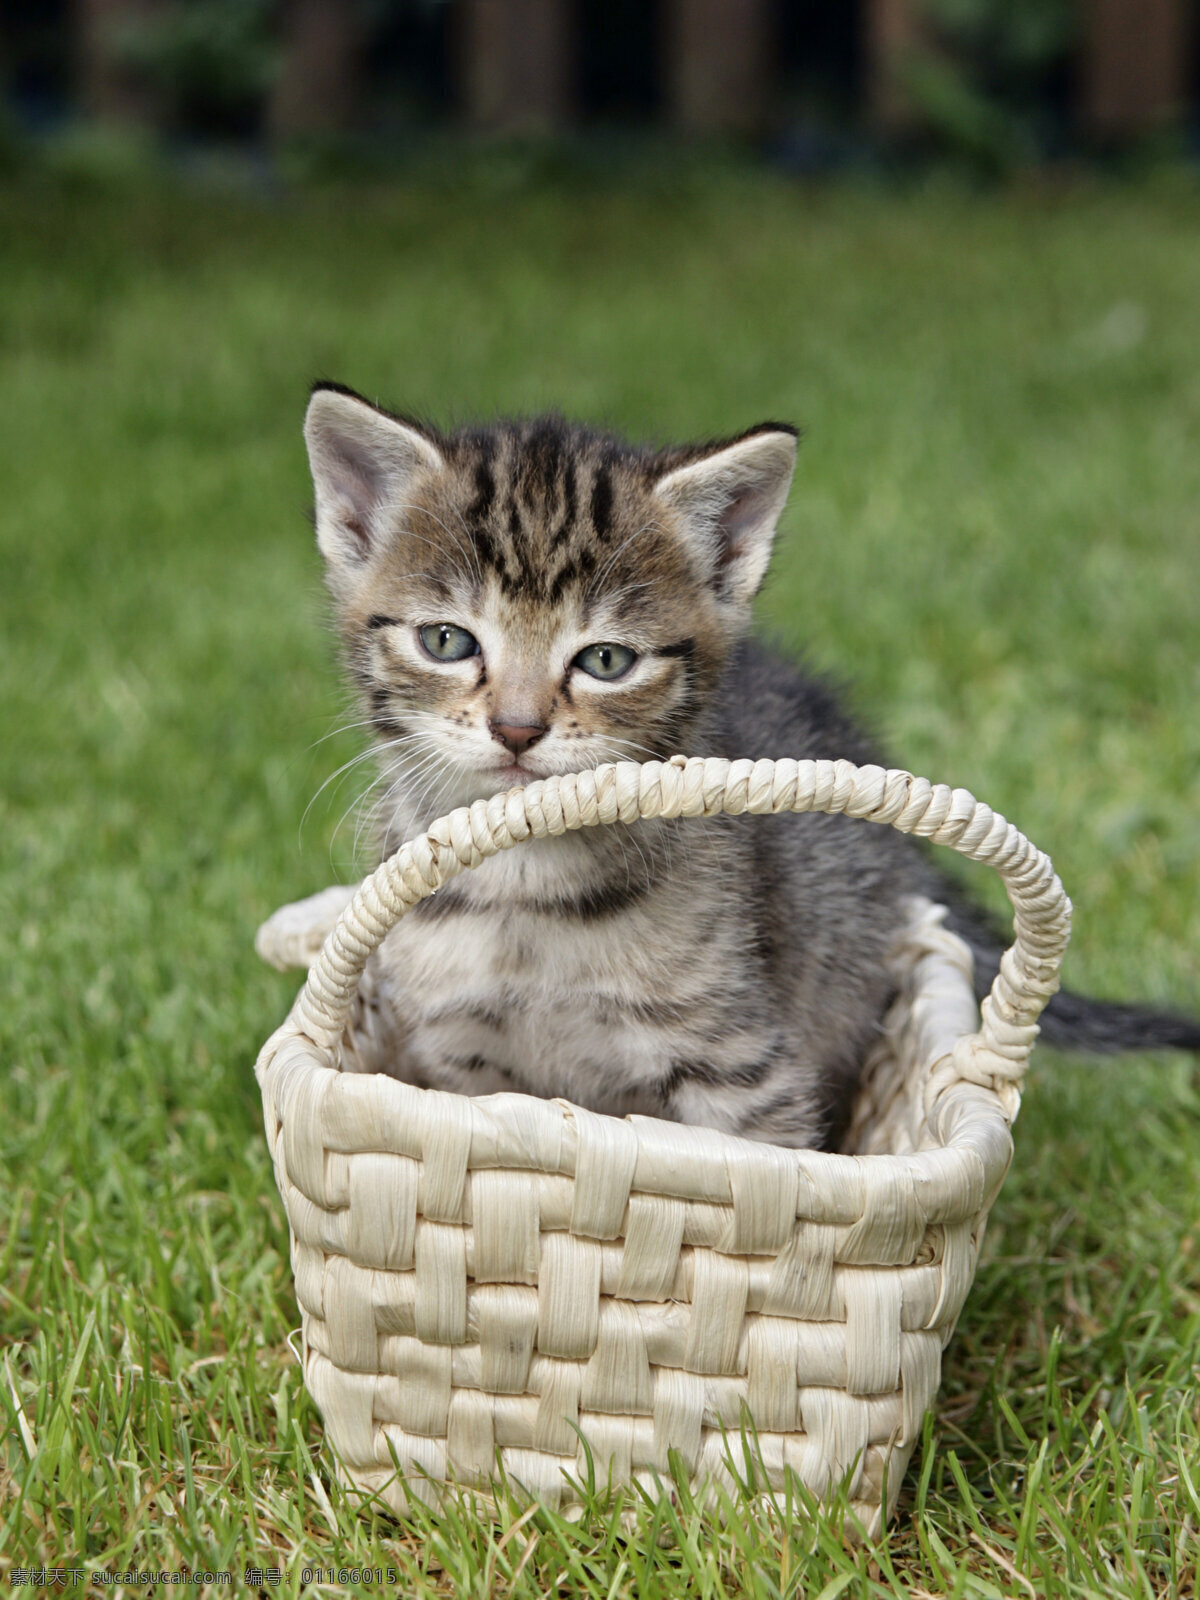 篮子 里 猫咪 草地 可爱 小猫 宠物 动物世界 摄影图 猫咪图片 生物世界